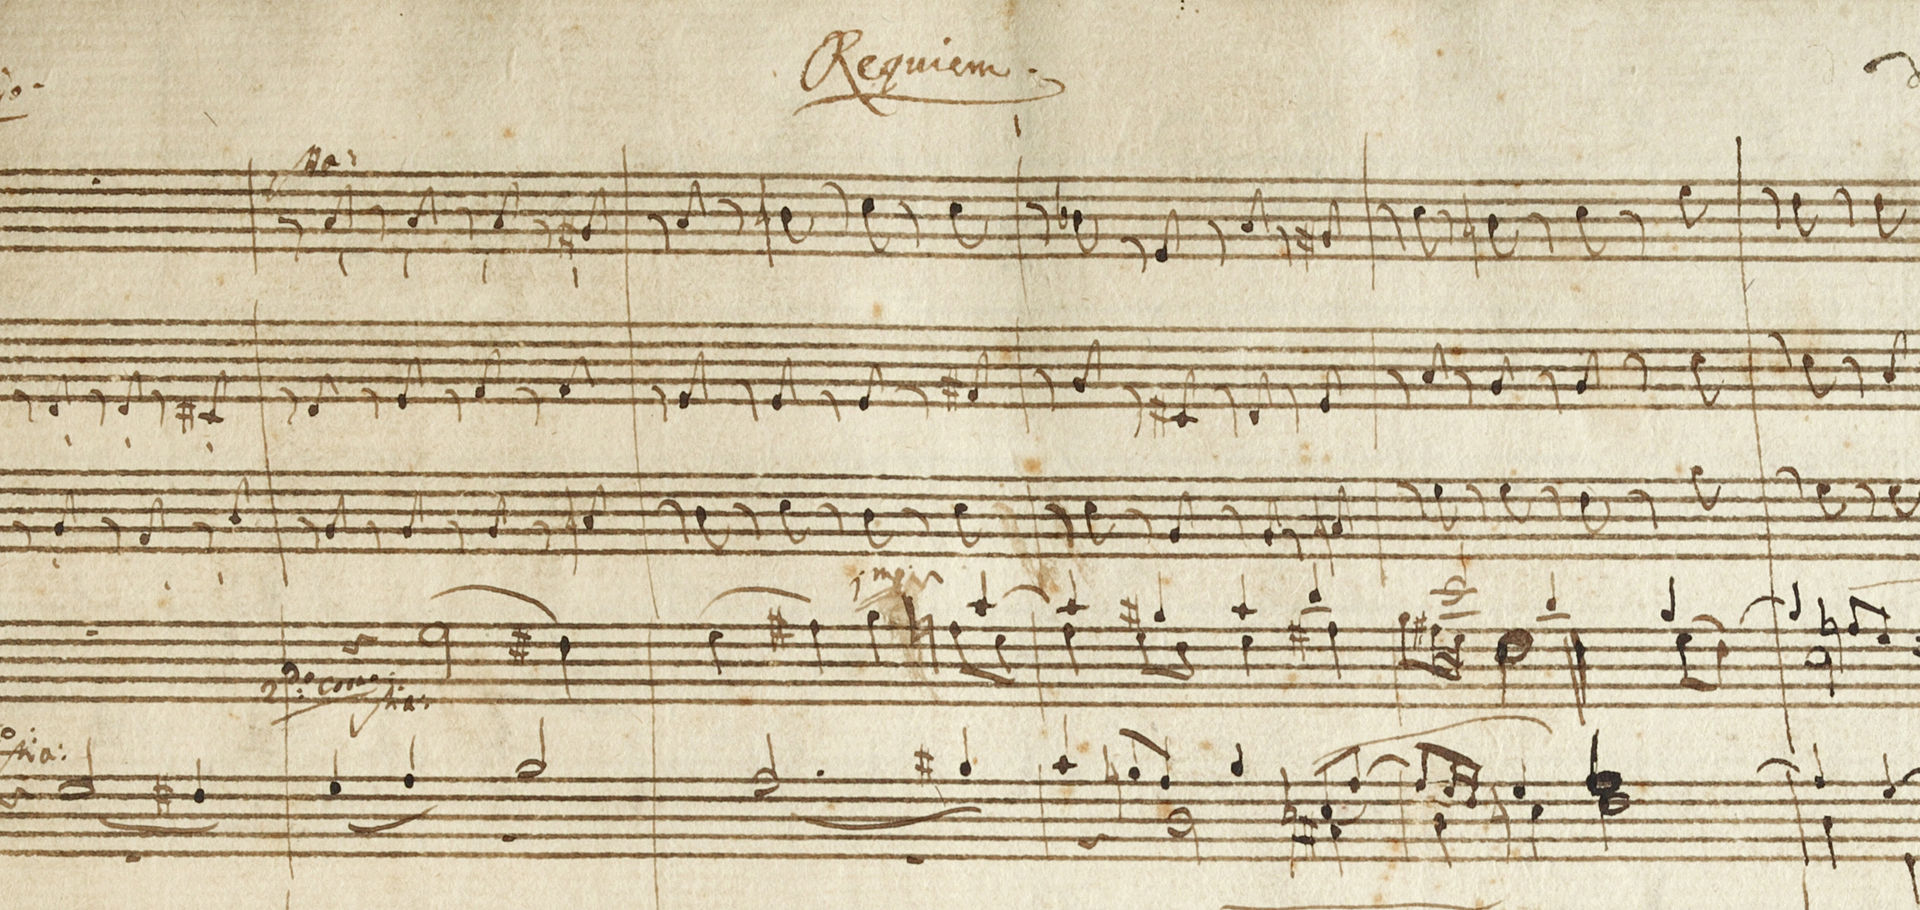 Requiem von Wolfgang Amadeus Mozart, Musiksammlung, Österreichische Nationalbibliothek